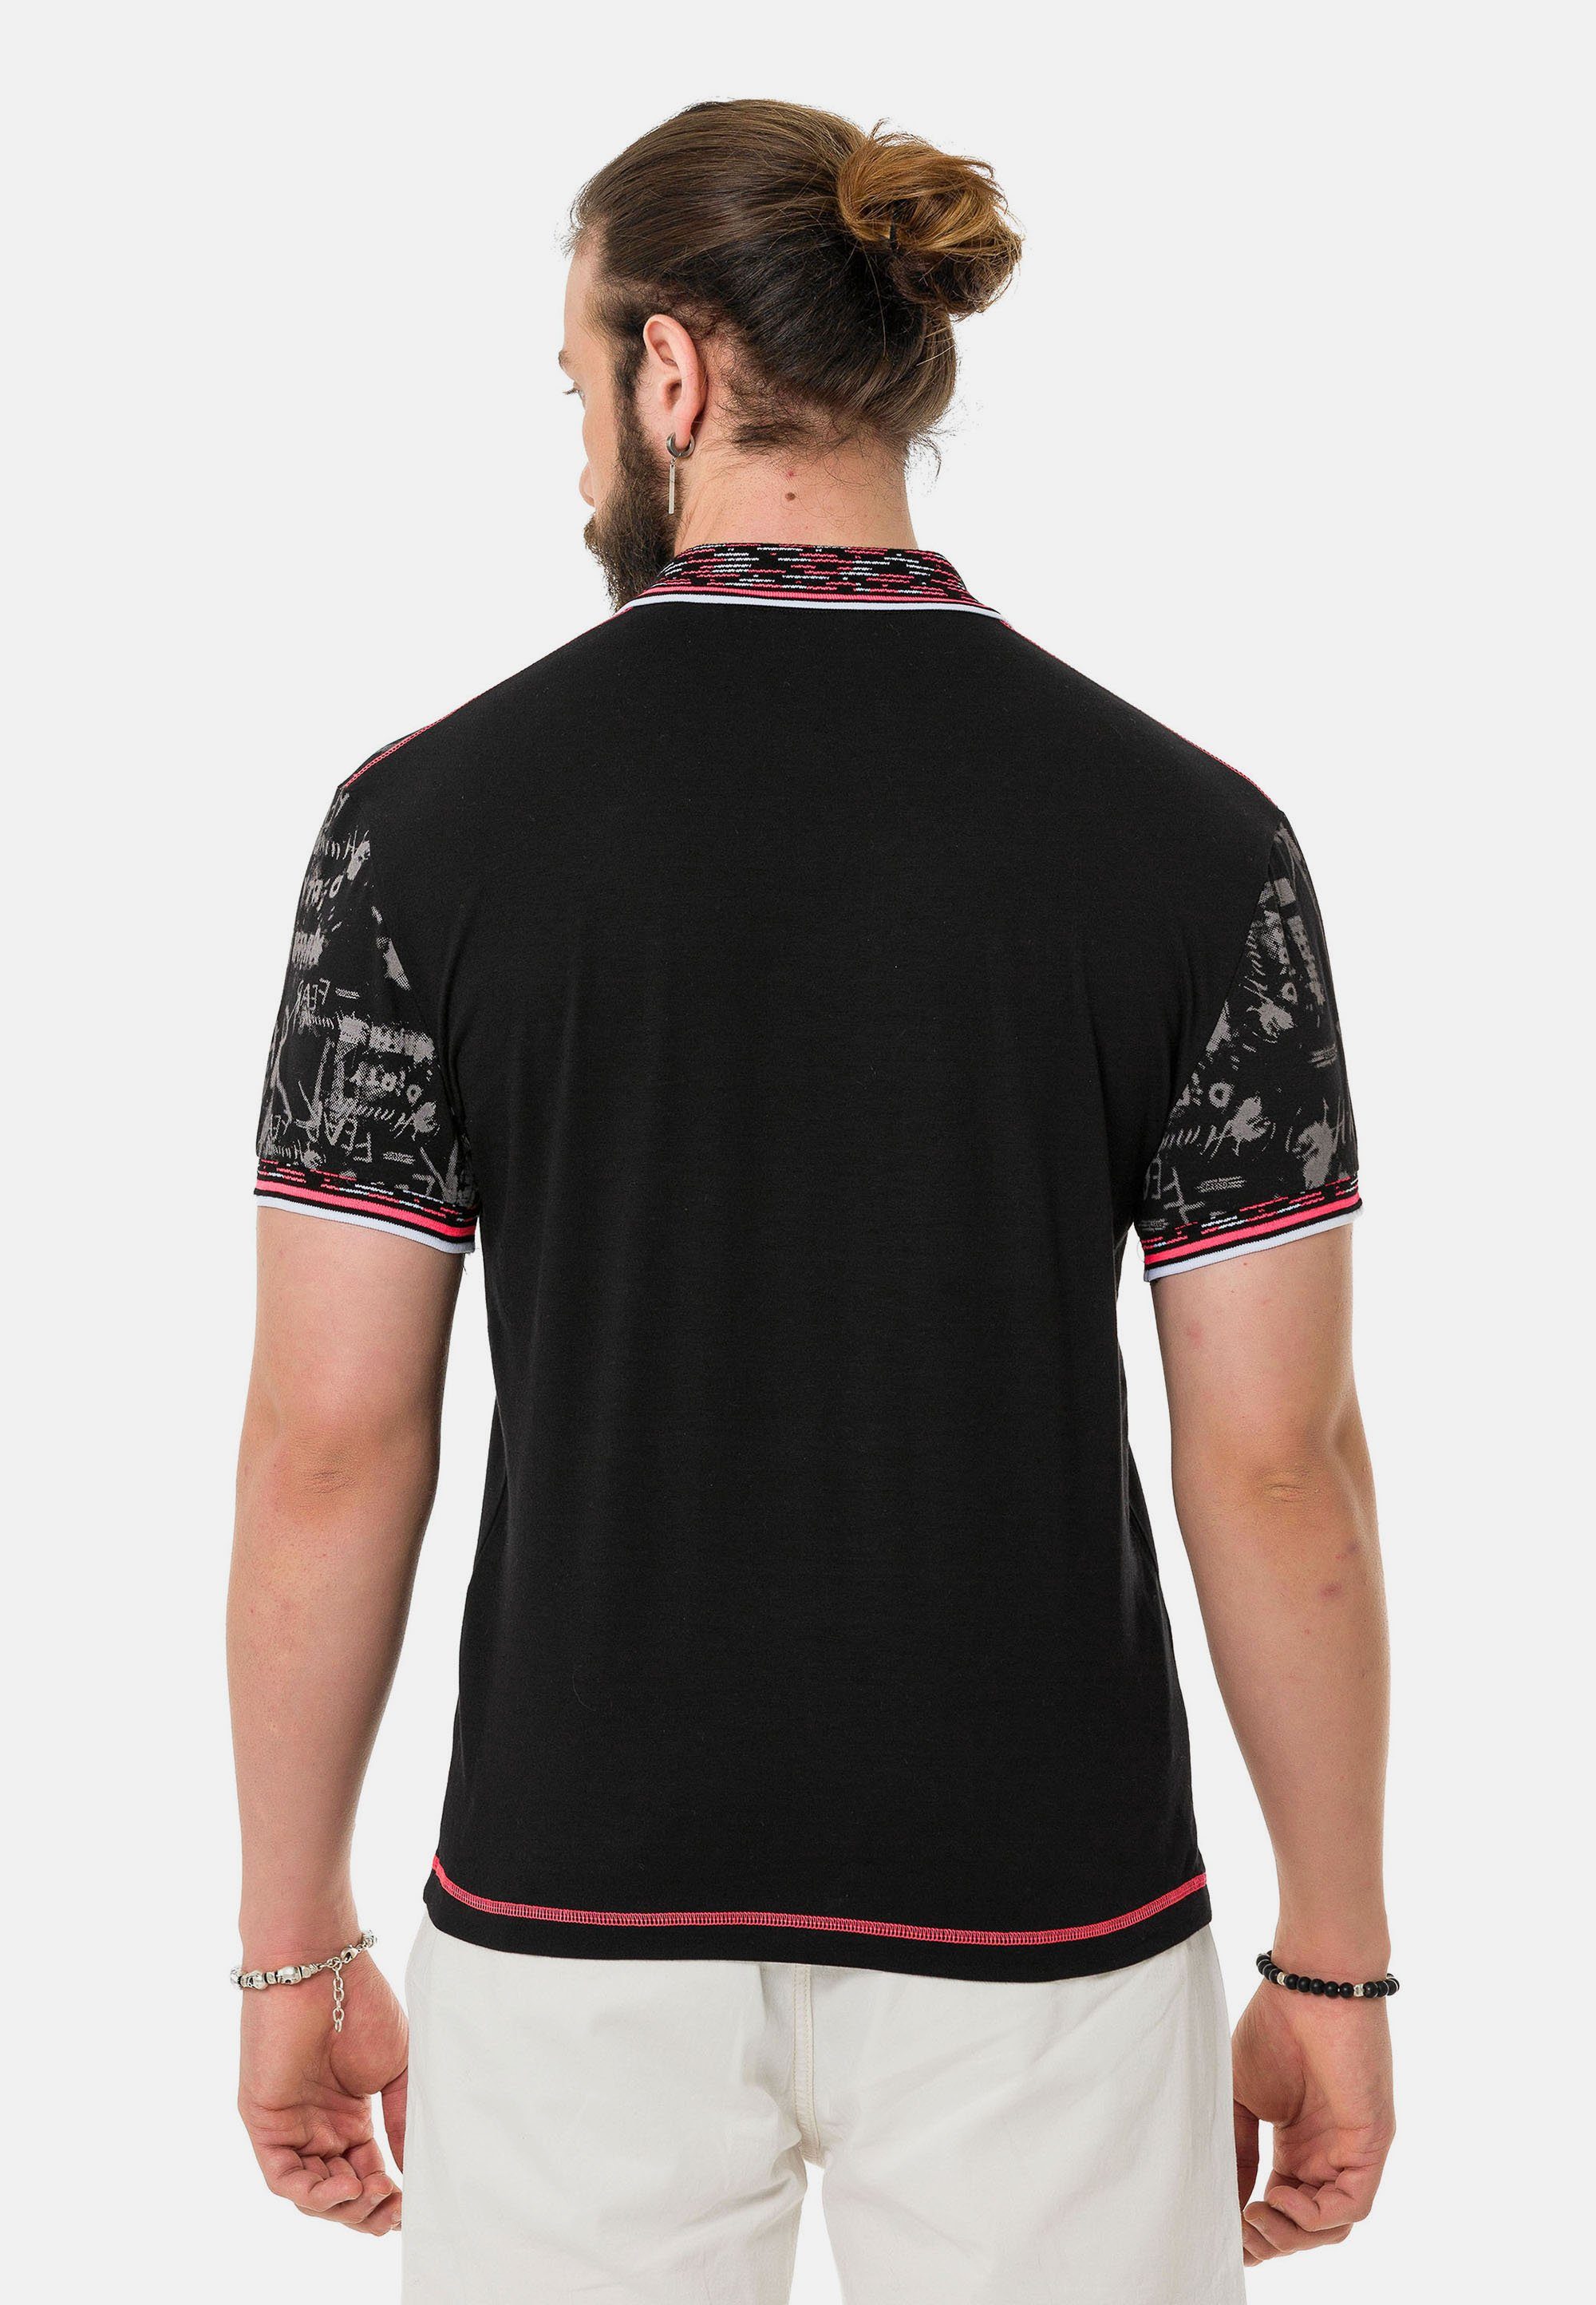 Baxx in Cipo Polo-Design Poloshirt & coolem schwarz